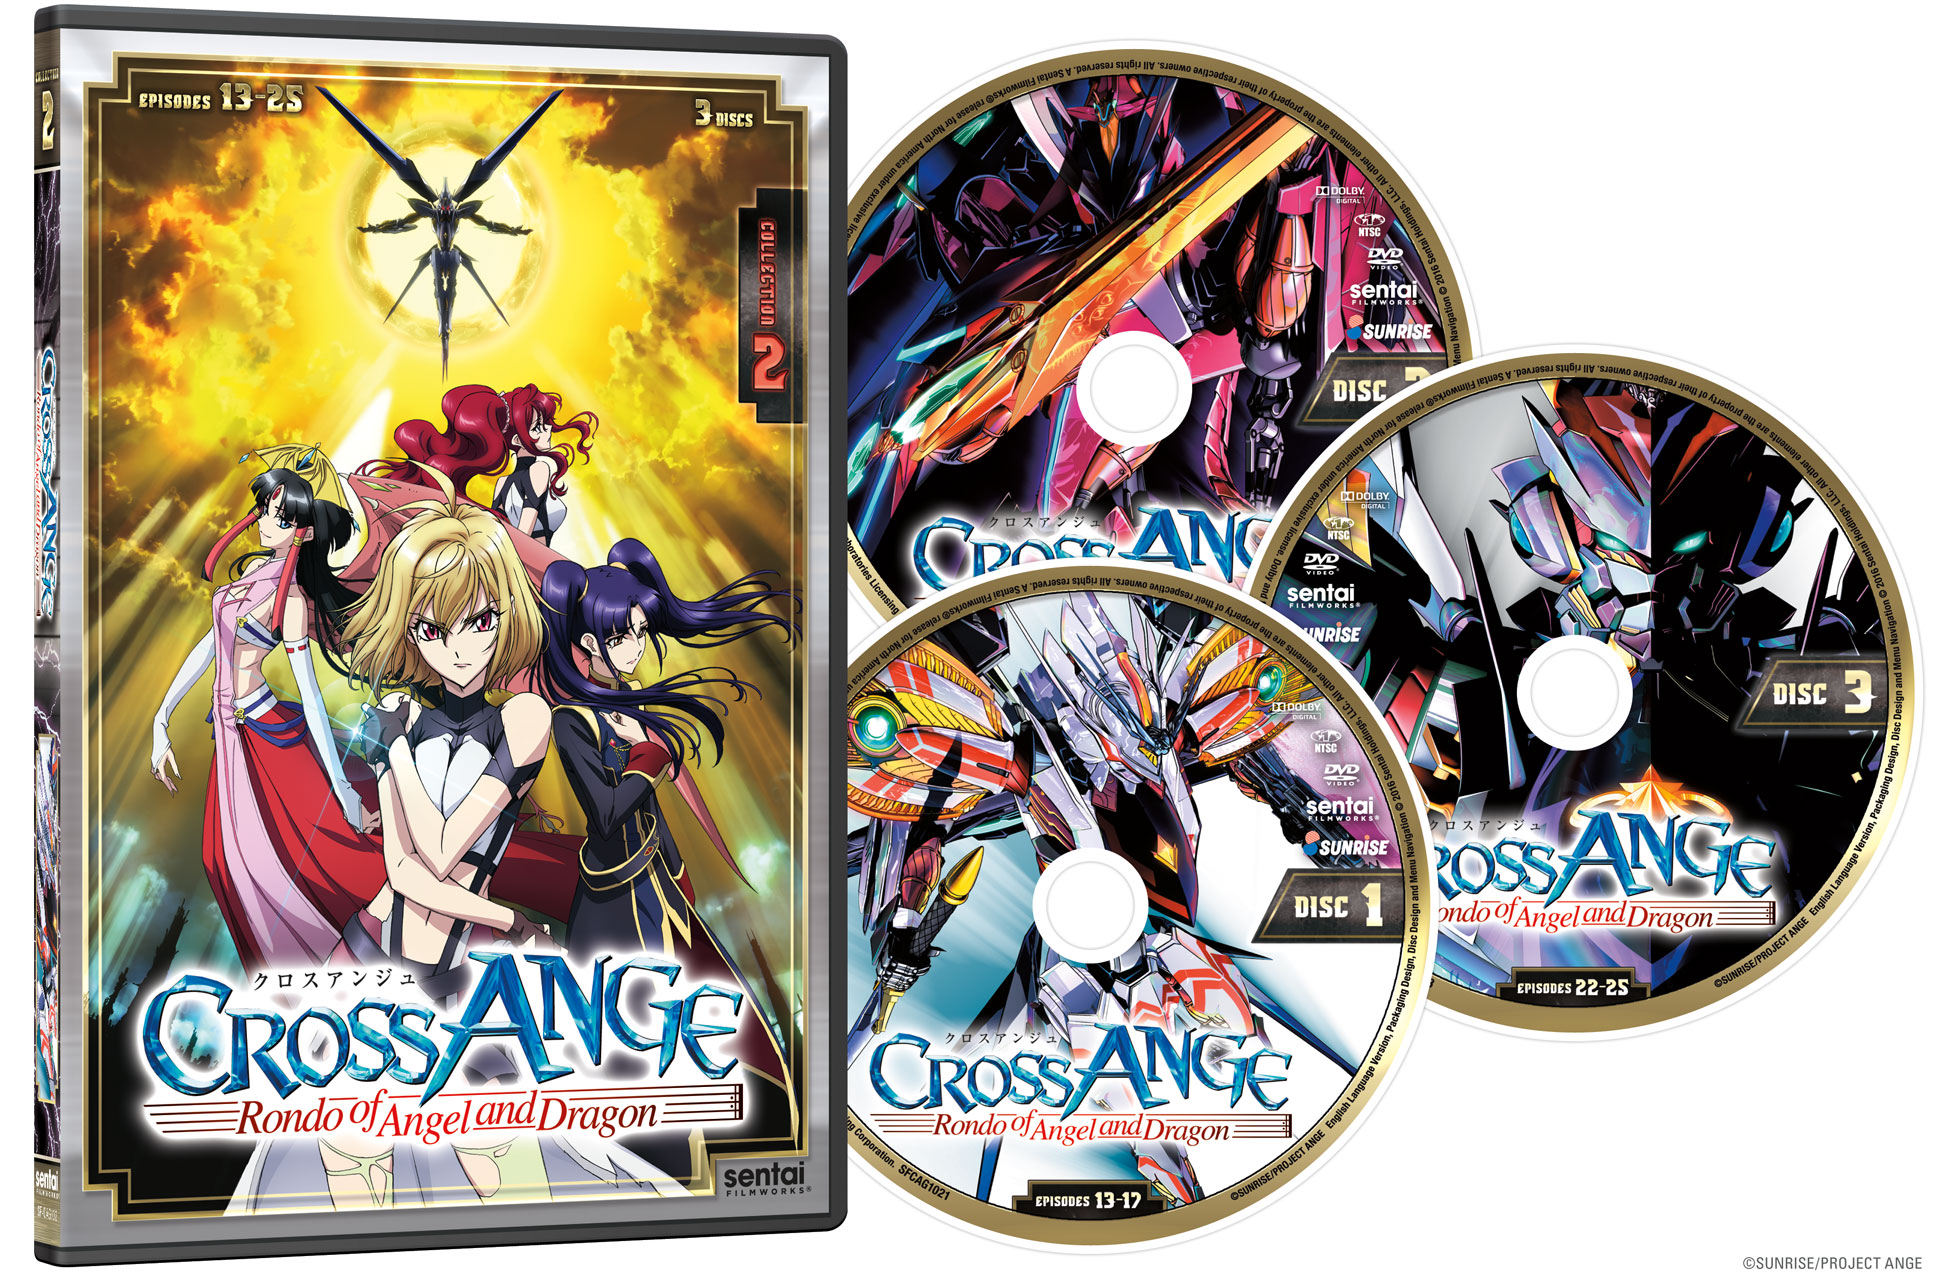 Anime Like Cross Ange: Rondo of Angel and Dragon